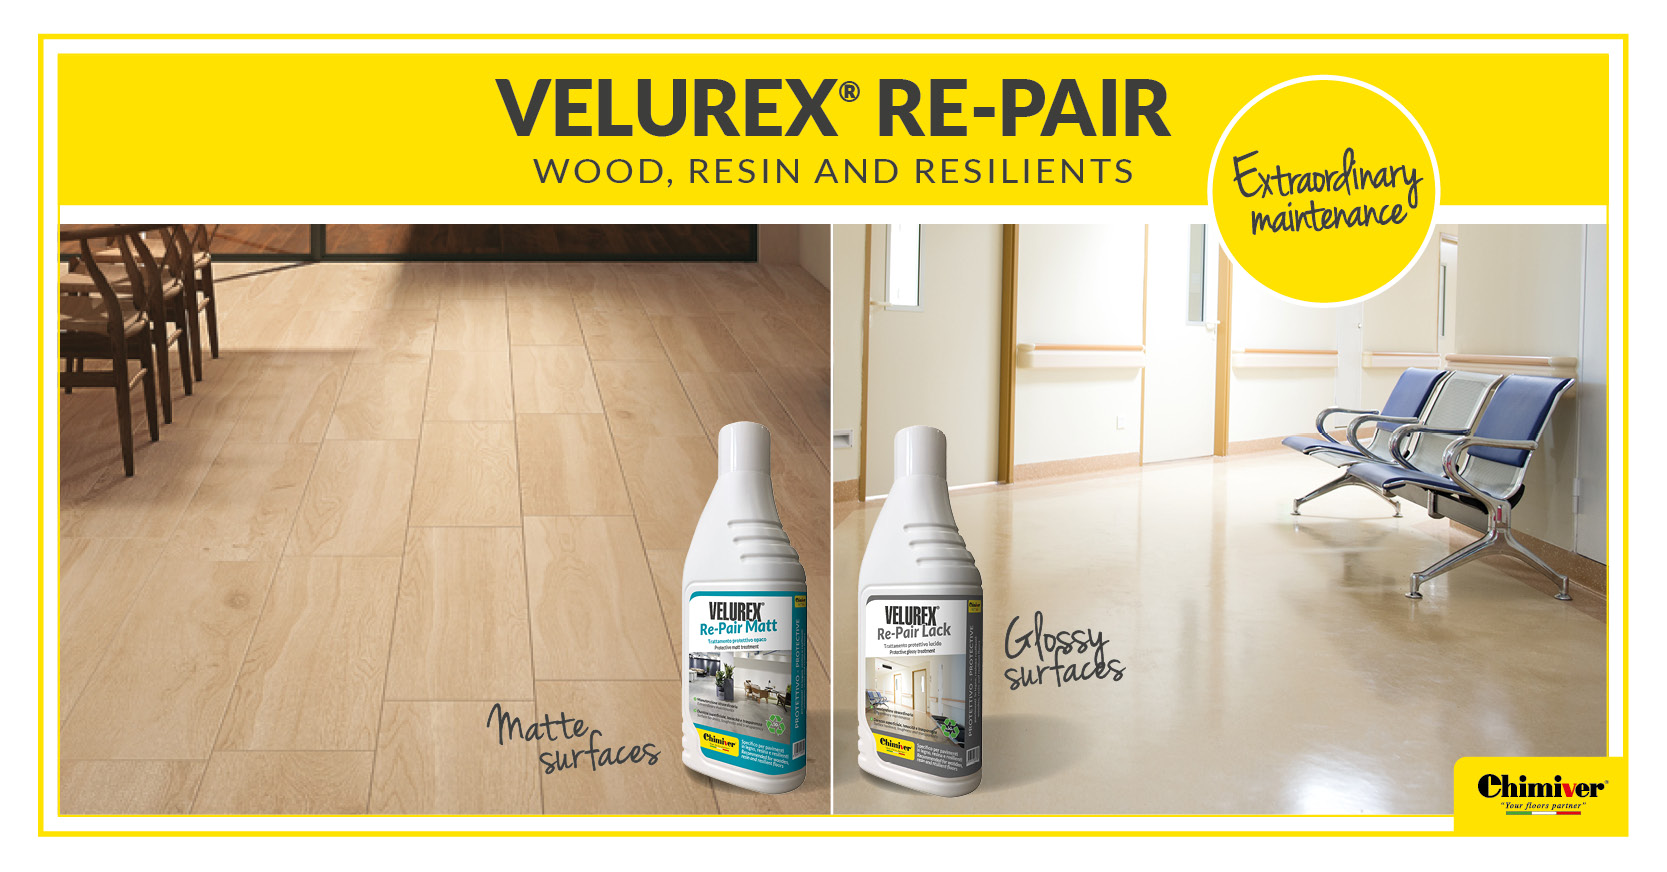 Lo sai che… con VELUREX RE-PAIR puoi curare, rinnovare e proteggere i tuoi pavimenti verniciati in legno, resina e resilienti?